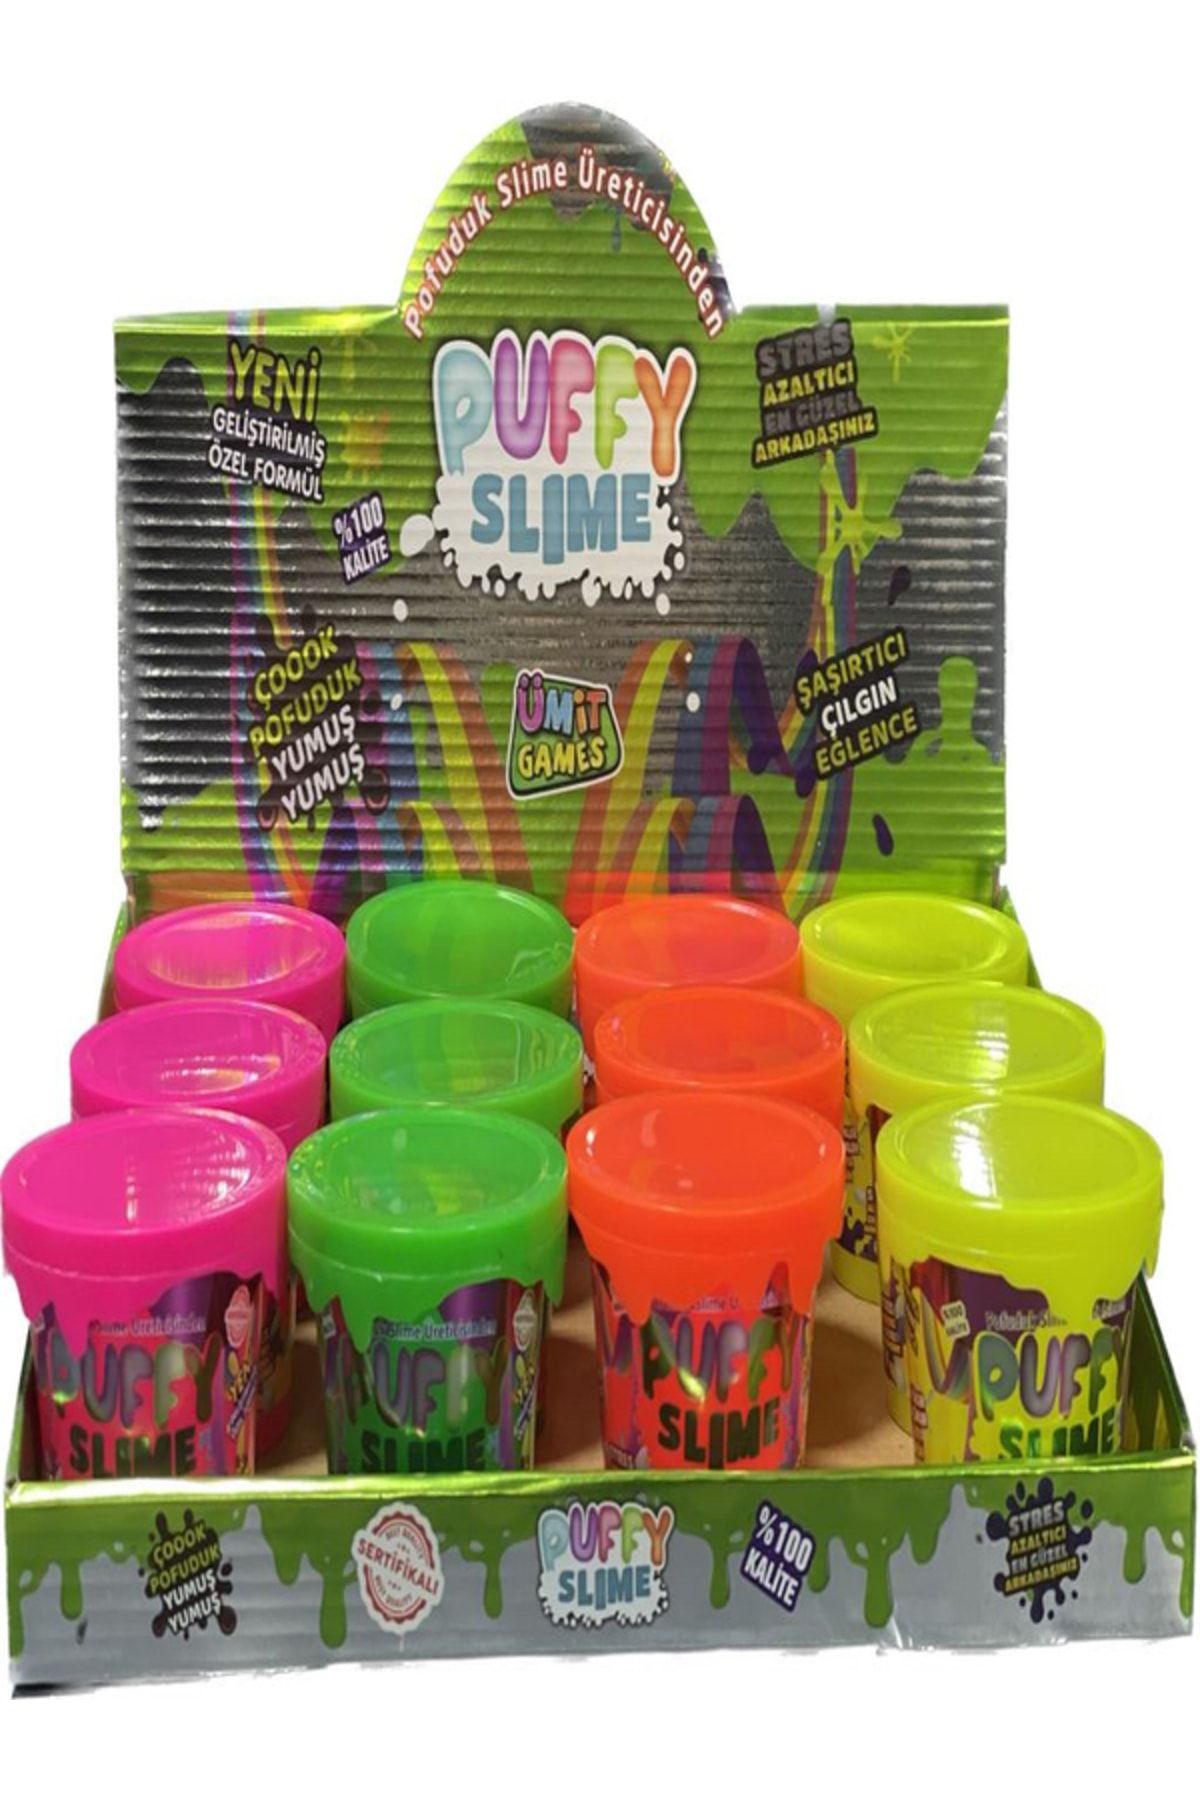 ümit toys Puffy Slime Yeni Trend Slime - 8 Adet Hazır Slime 4 Farklı Renkler 120 Gr Slaym Pop Tube